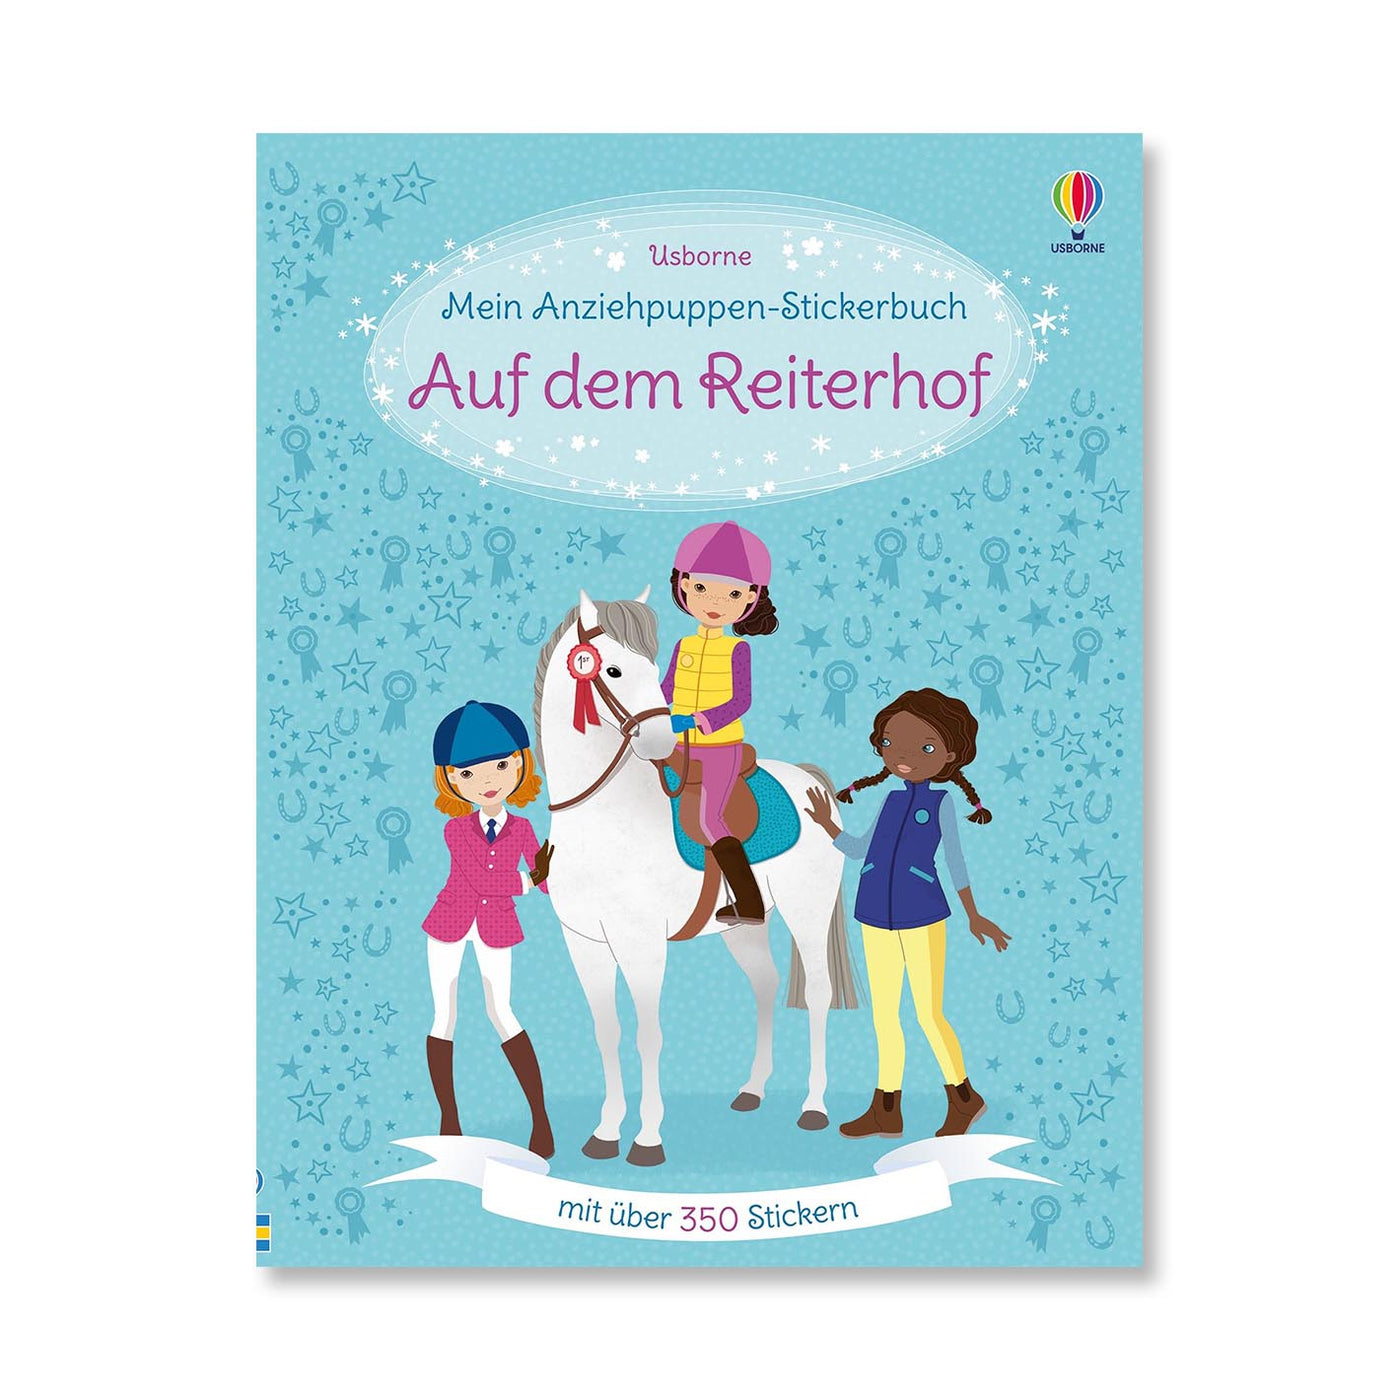 Anziehpuppen-Stickerbuch: Auf dem Reiterhof